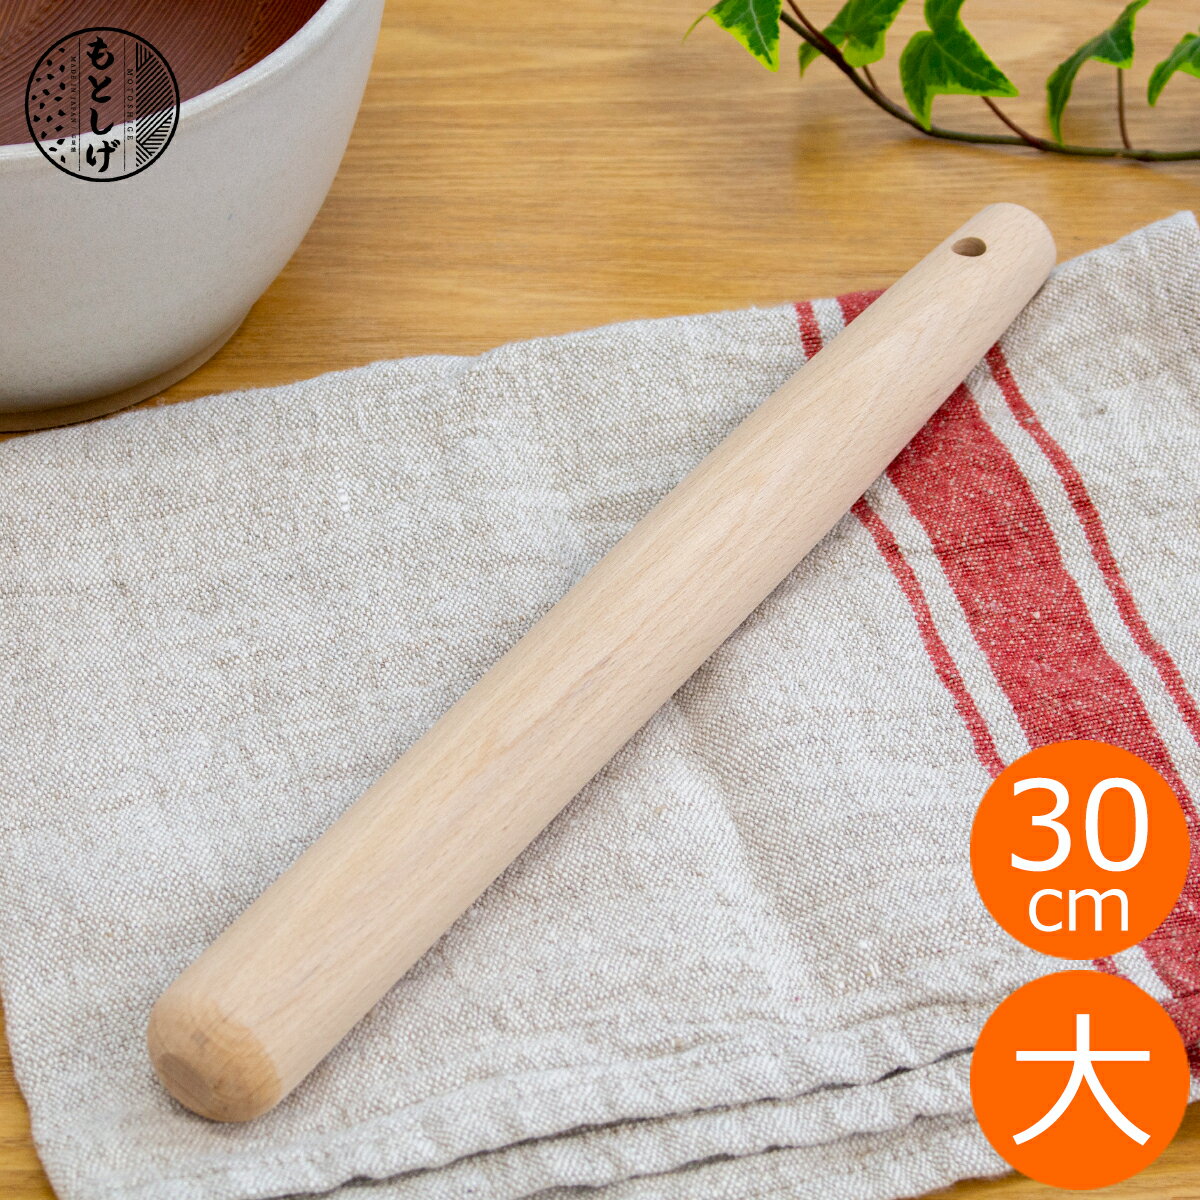 もとしげ すりこぎ 大 30cm 10号 木製 ブナ すりこ木 すりこぎ棒 ブナのすりこぎ 日本製 元重製陶所